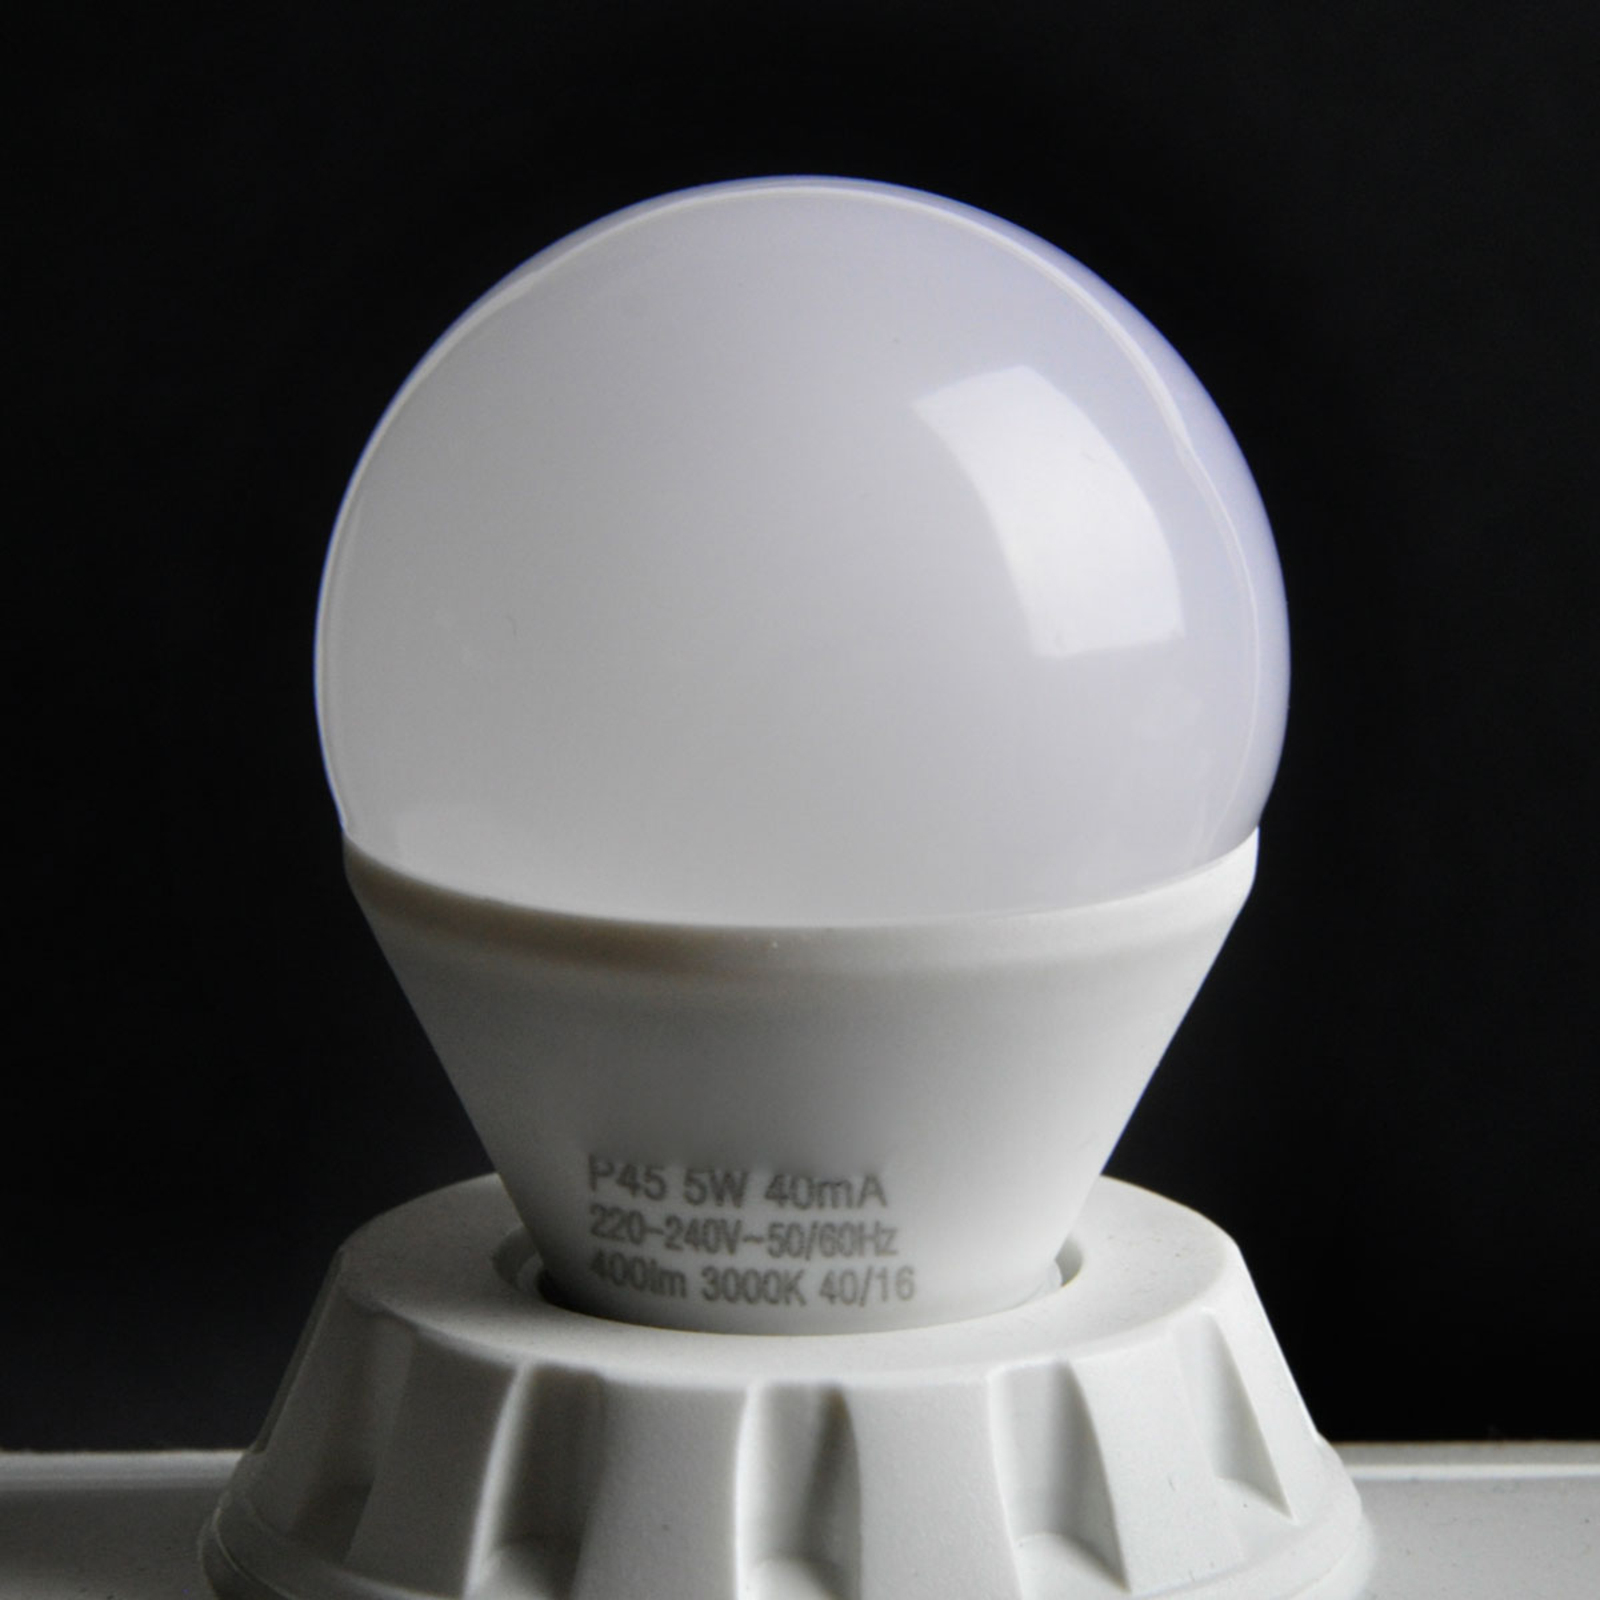 Lampadina LED goccia E14 5W, bianco caldo, easydim